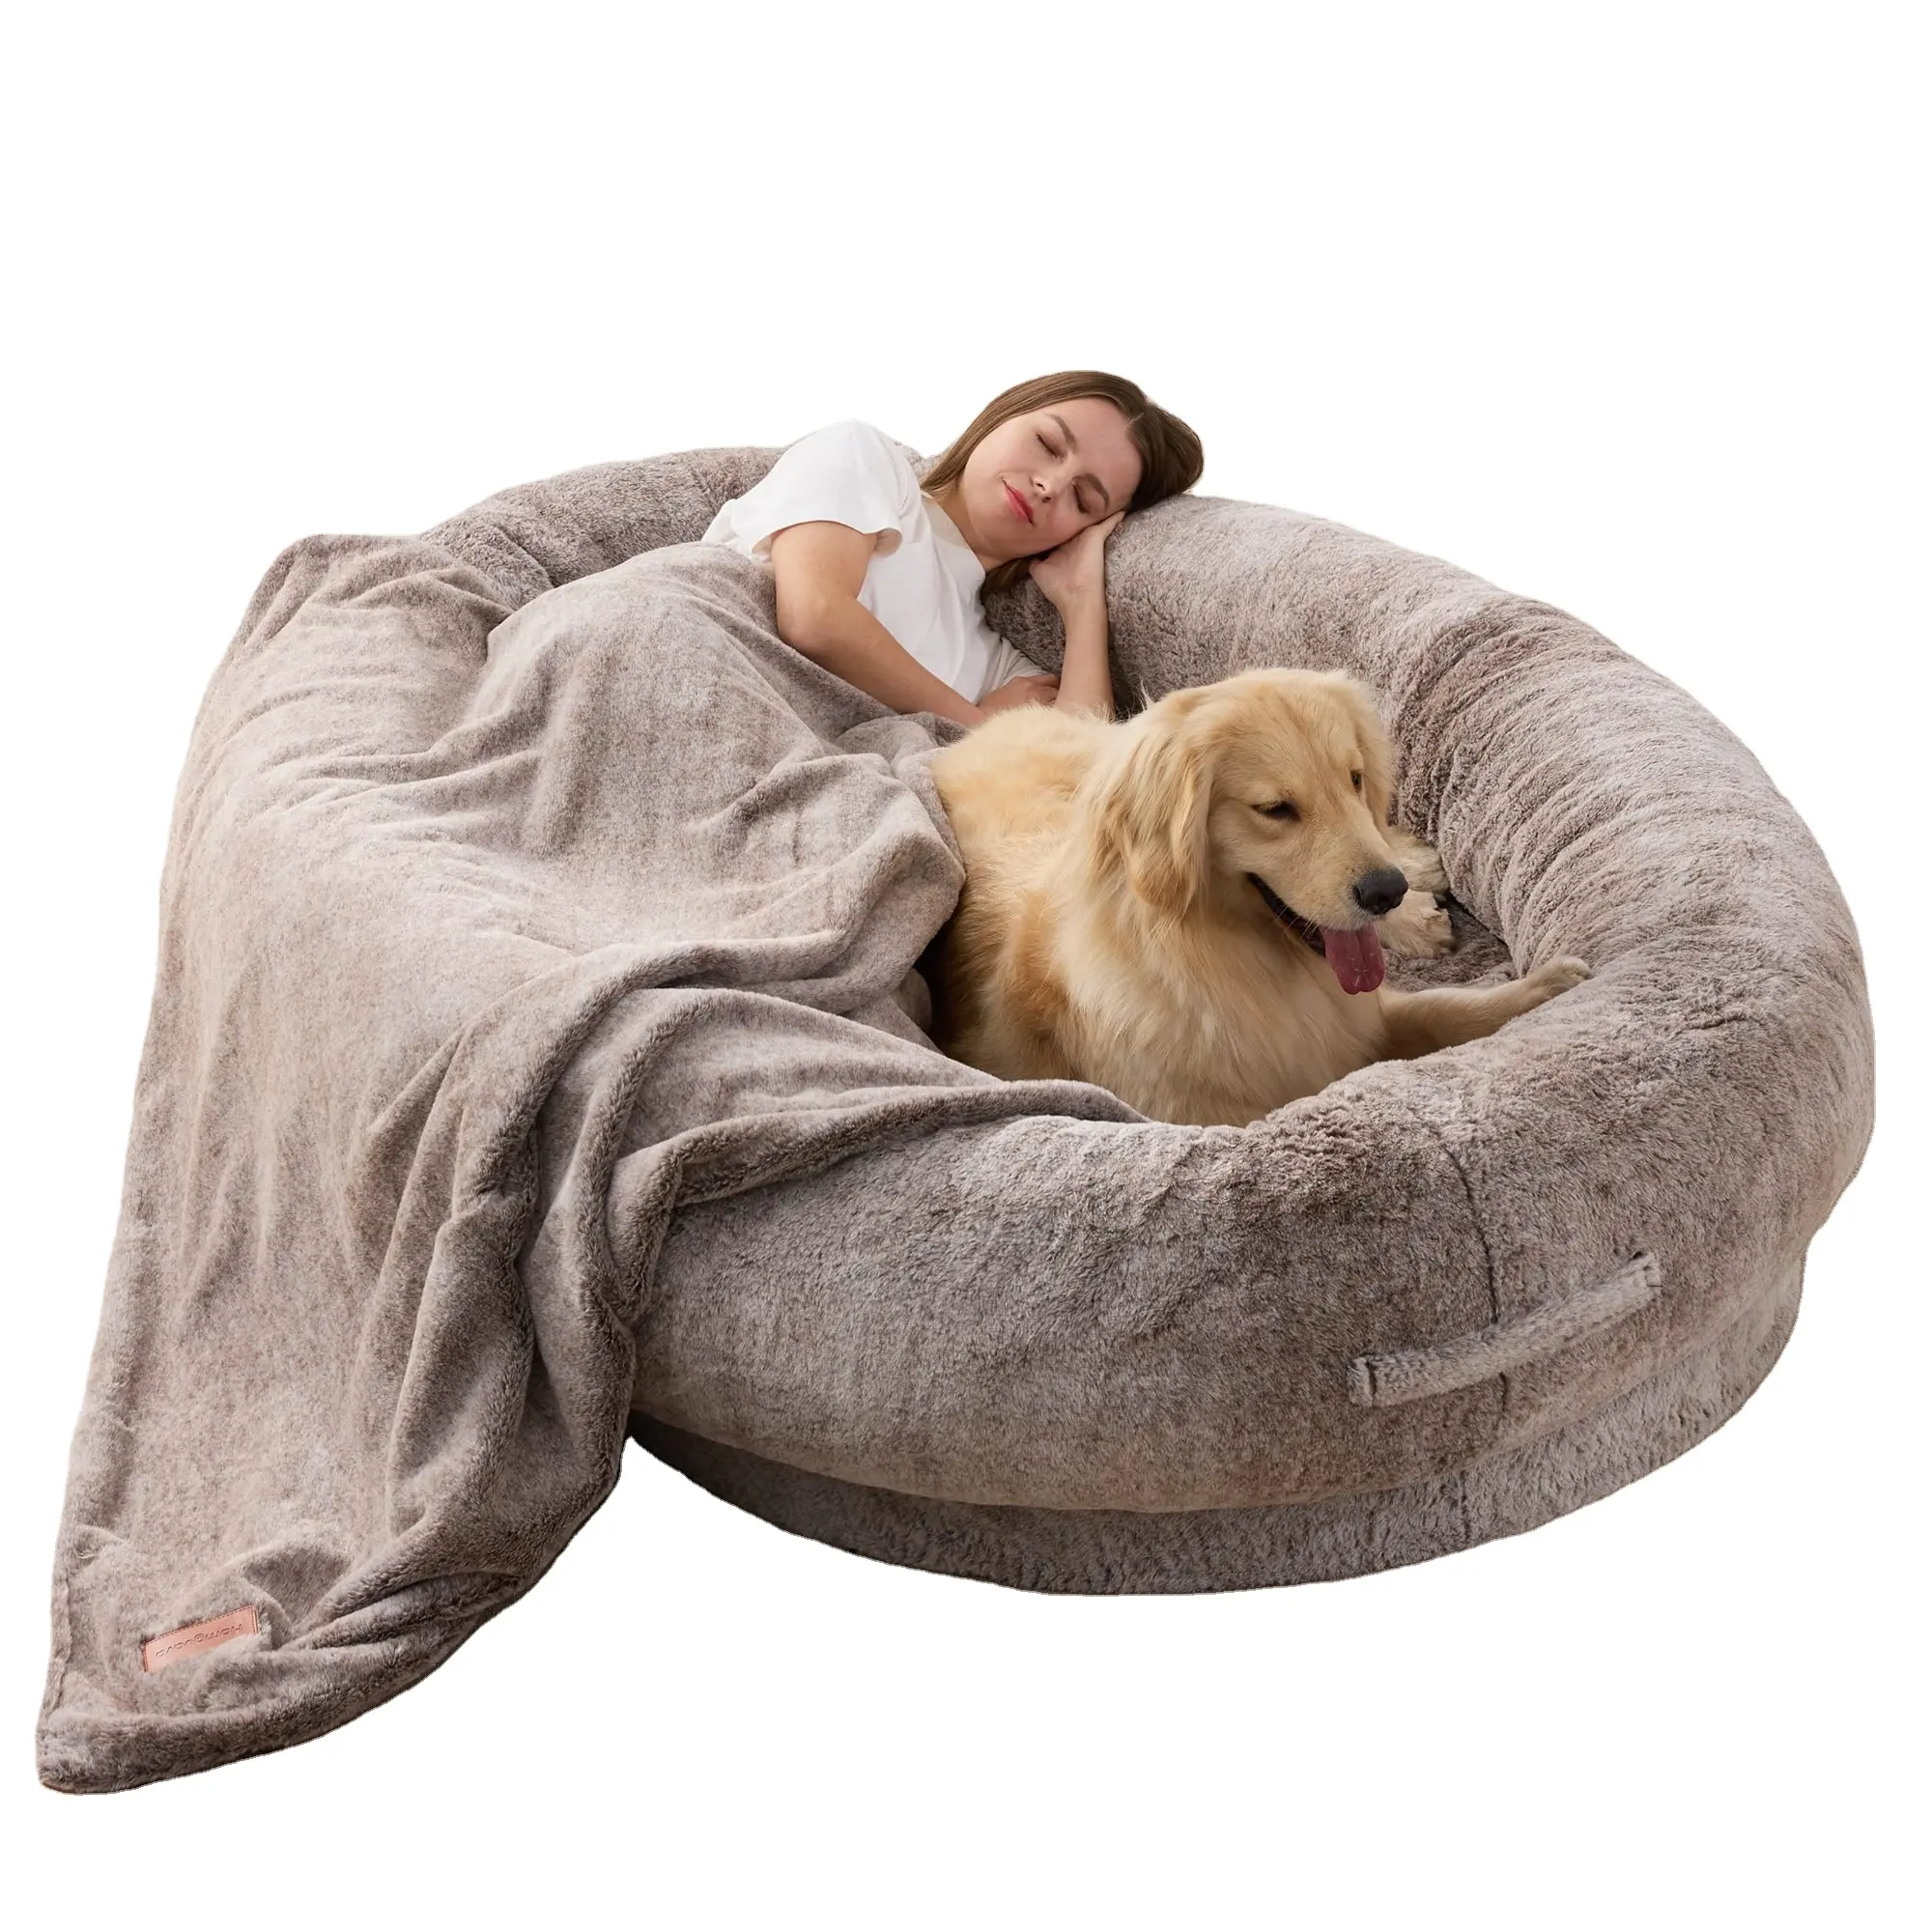 Petdom-cama redonda gigante de felpa para perro, cama larga redonda de felpa para perros, humanos o gatos grandes, sofá para una sola persona para adultos